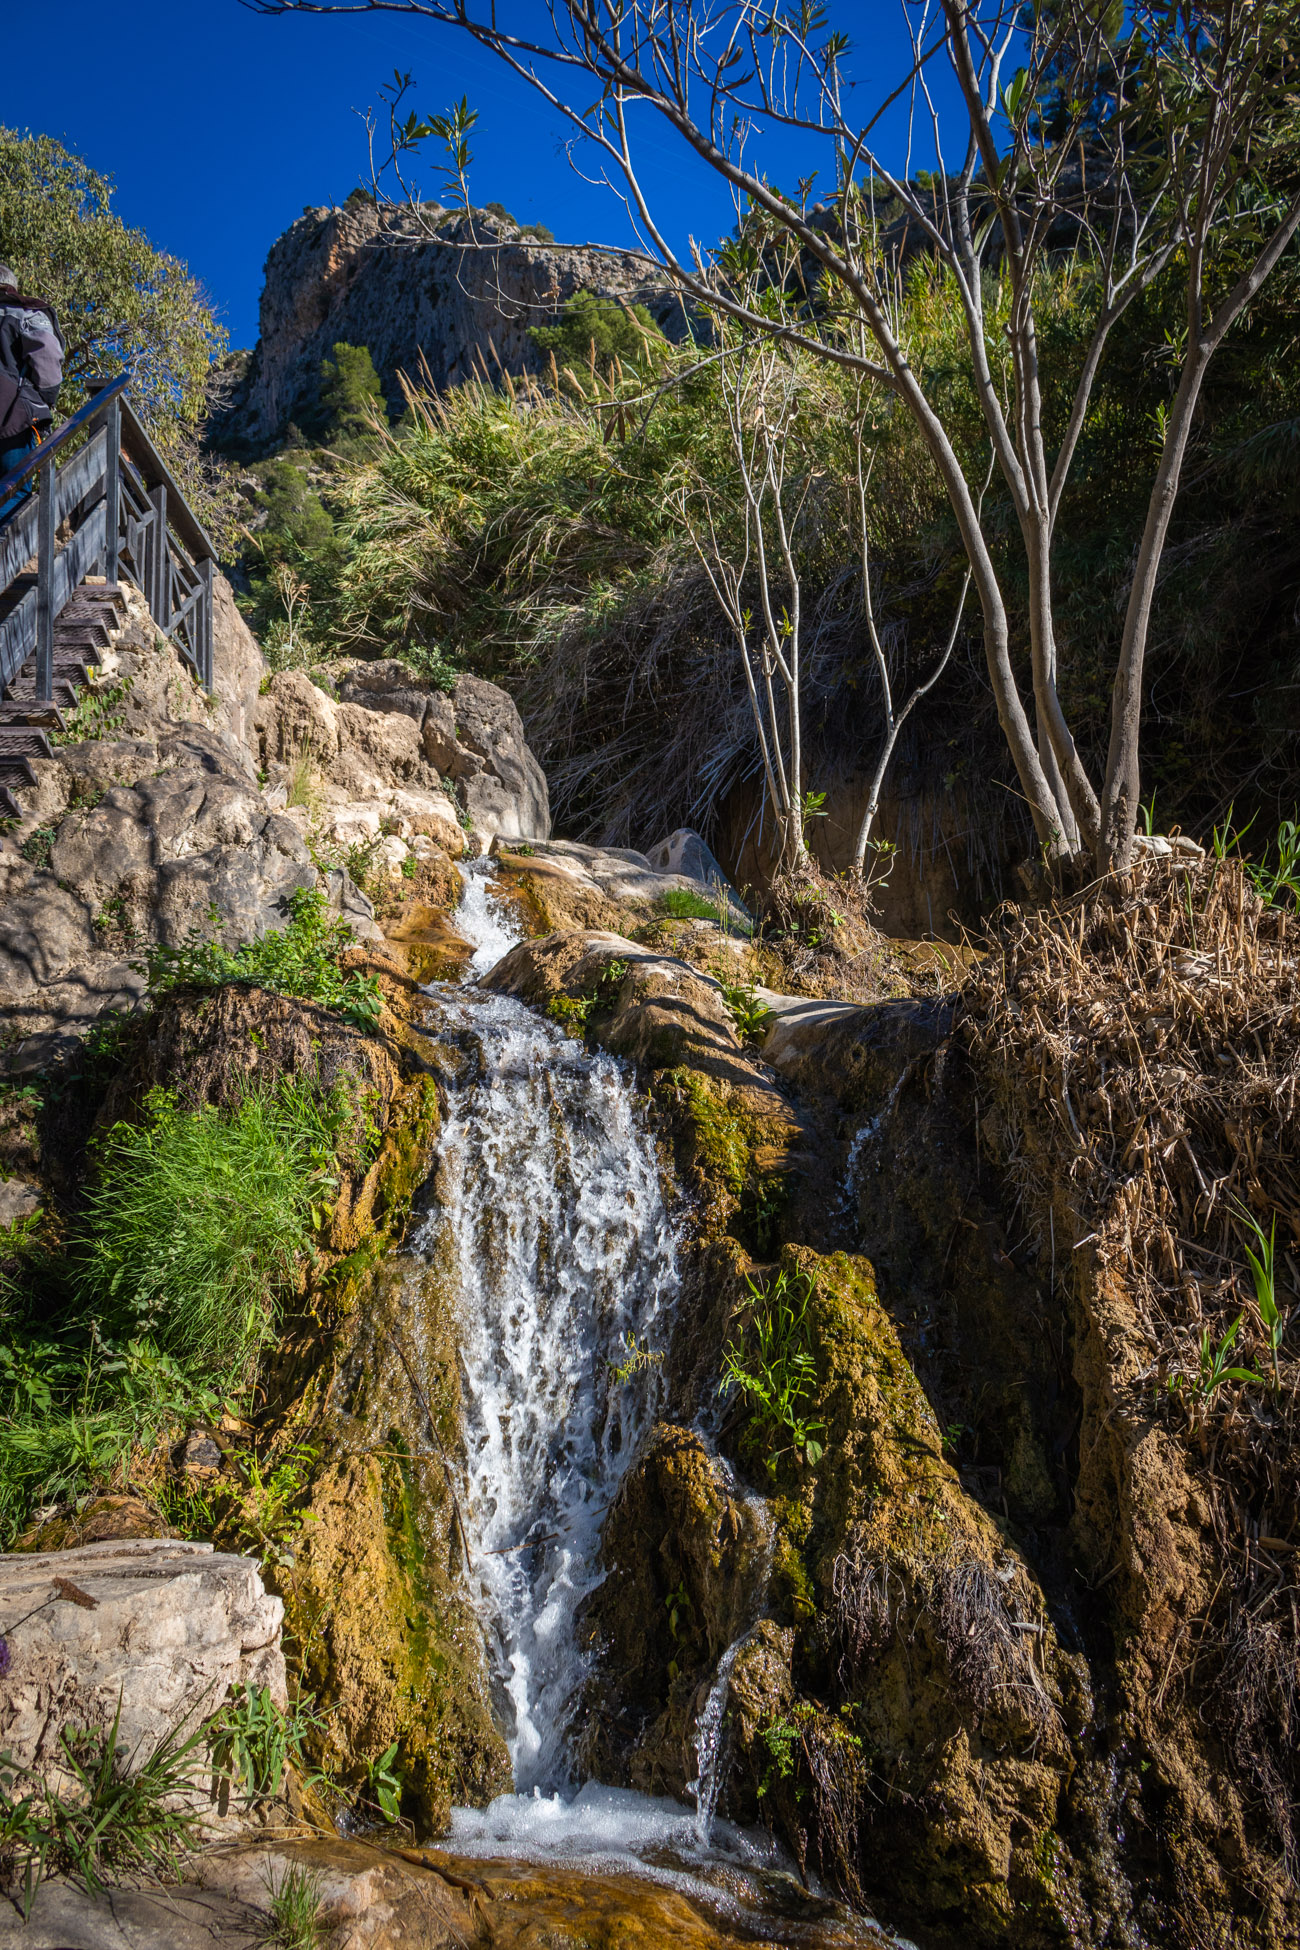 Water loopt langs met mos bedekte rotsen omlaag